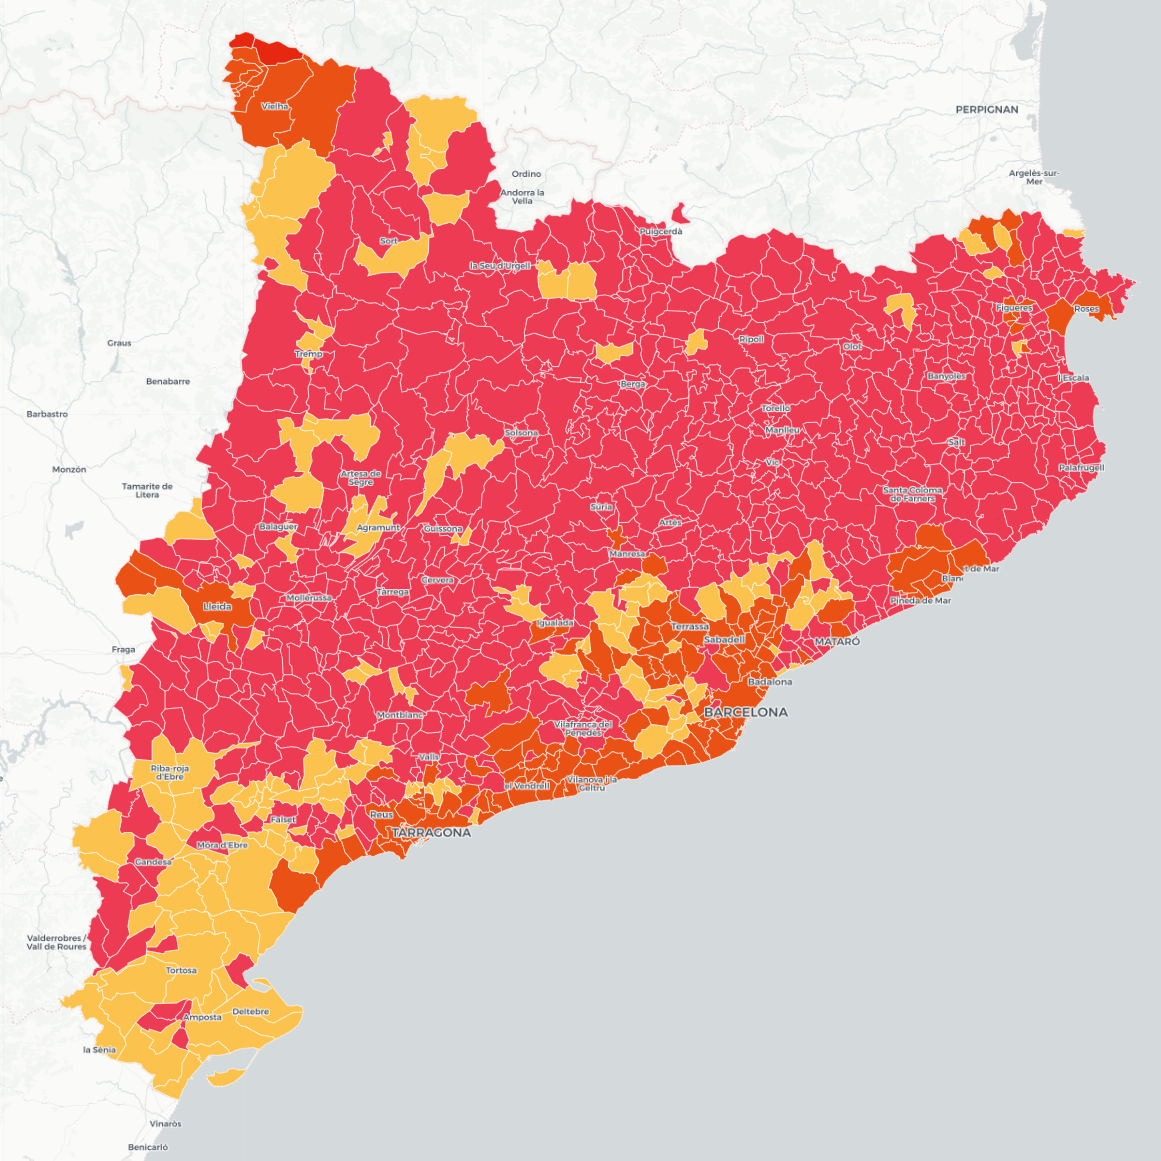 MAPA: El partit més votat per municipi